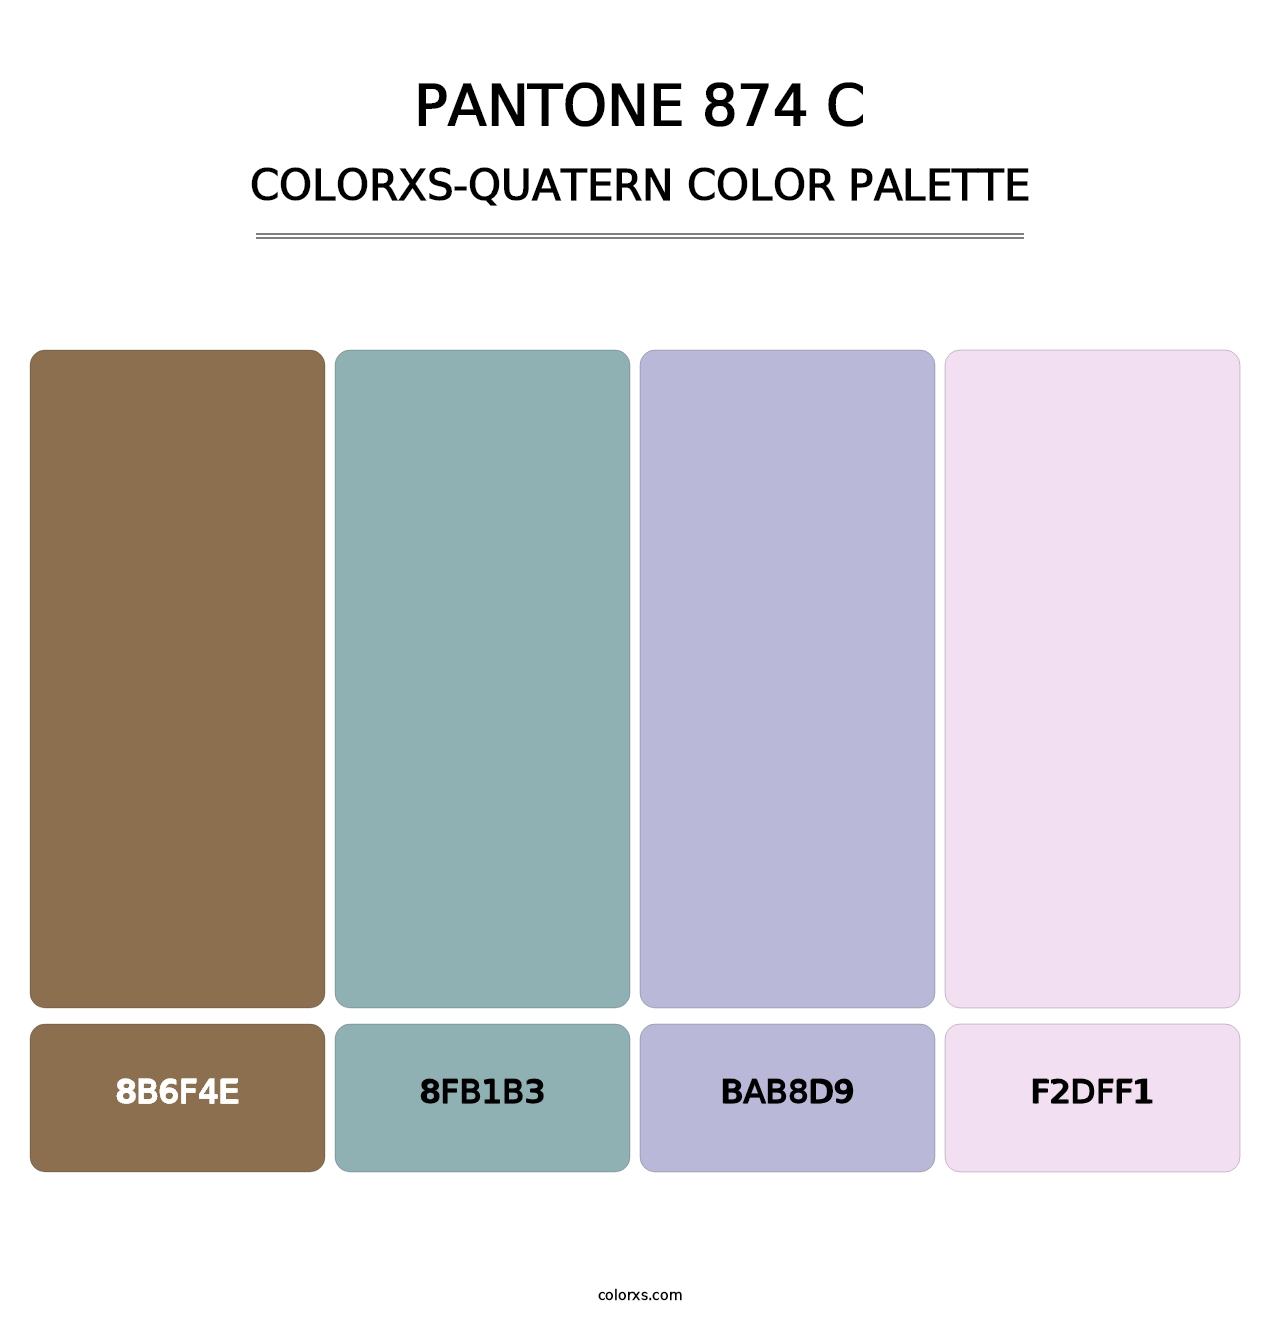 PANTONE 874 C - Colorxs Quatern Palette